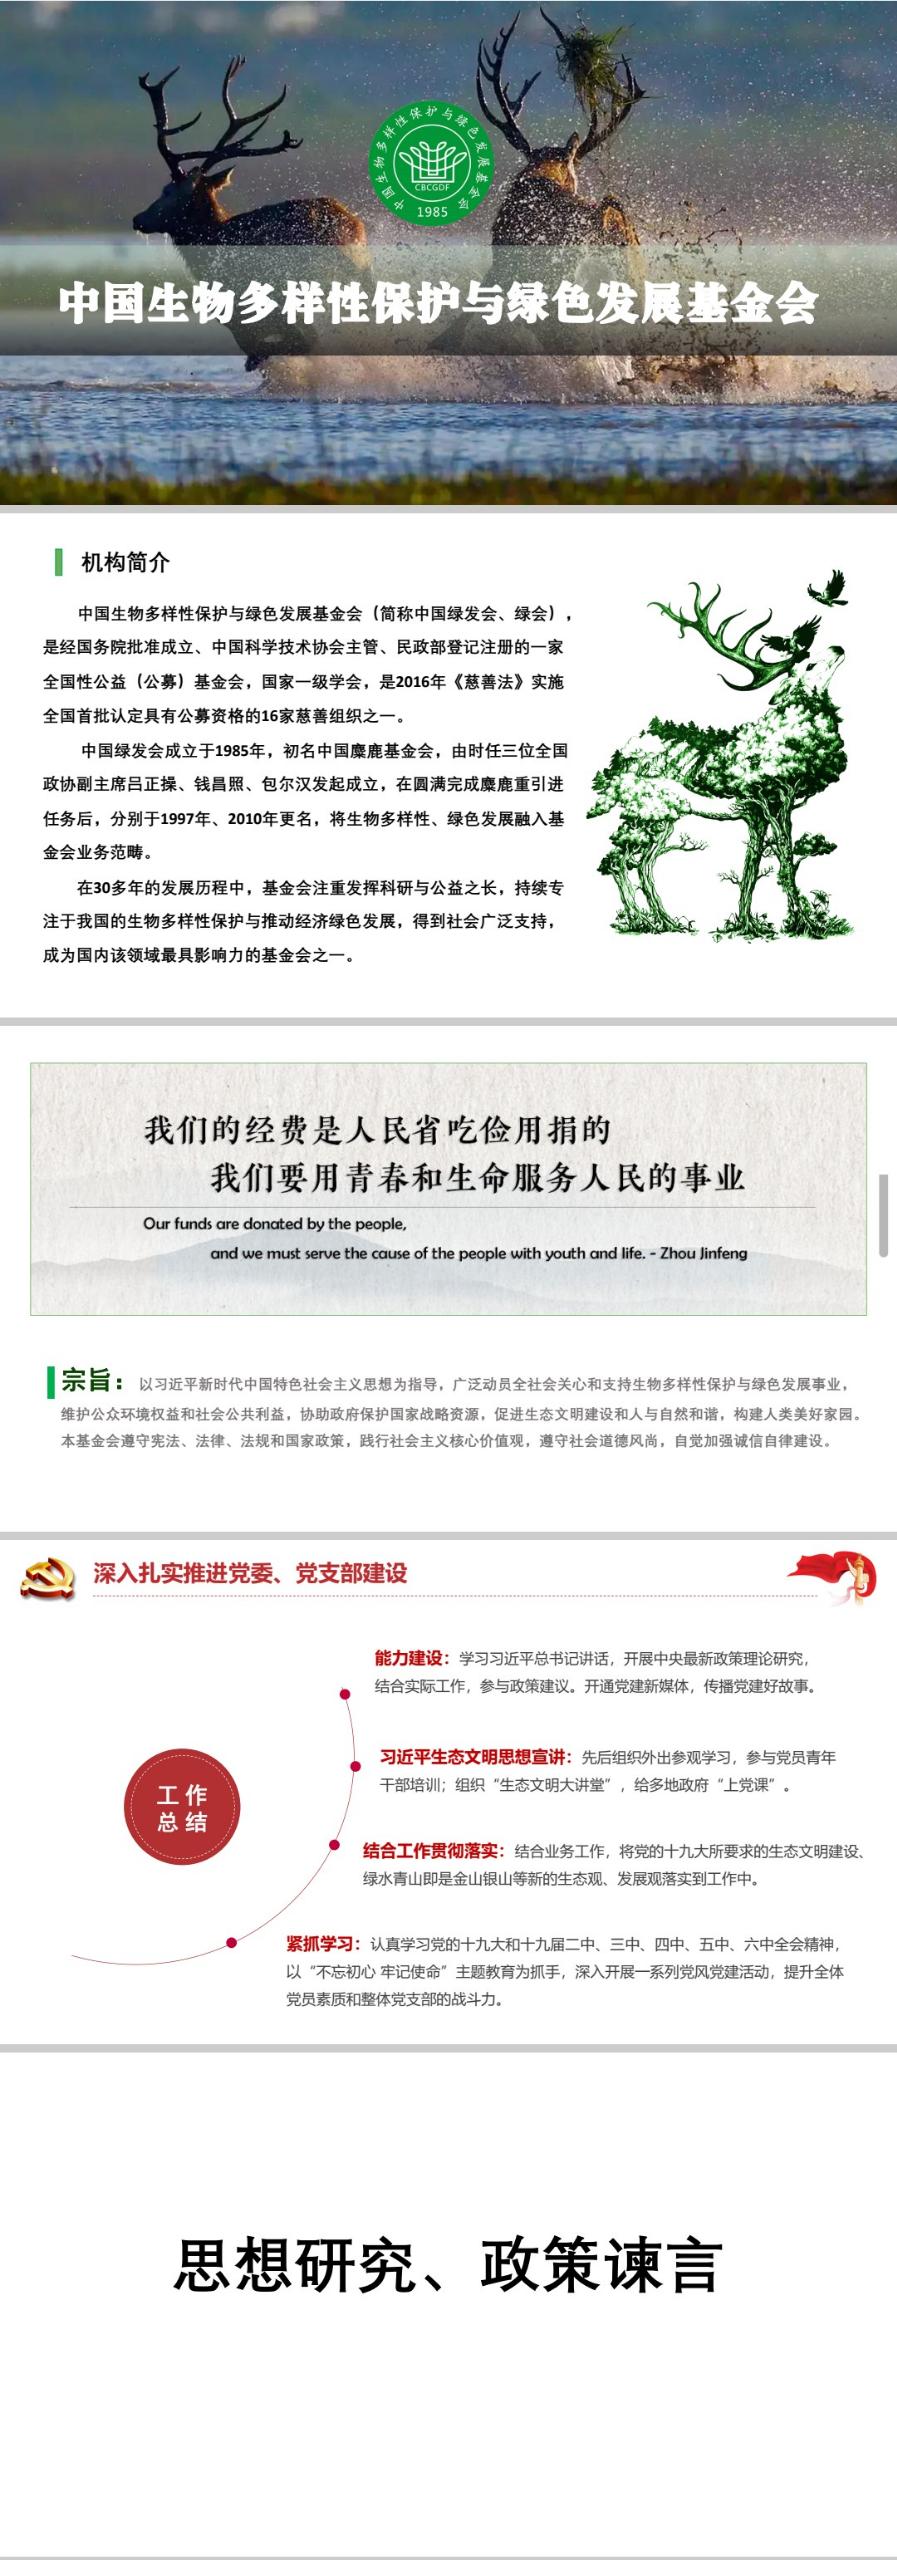 中国生物多样性保护与绿色发展基金会简介1.jpg